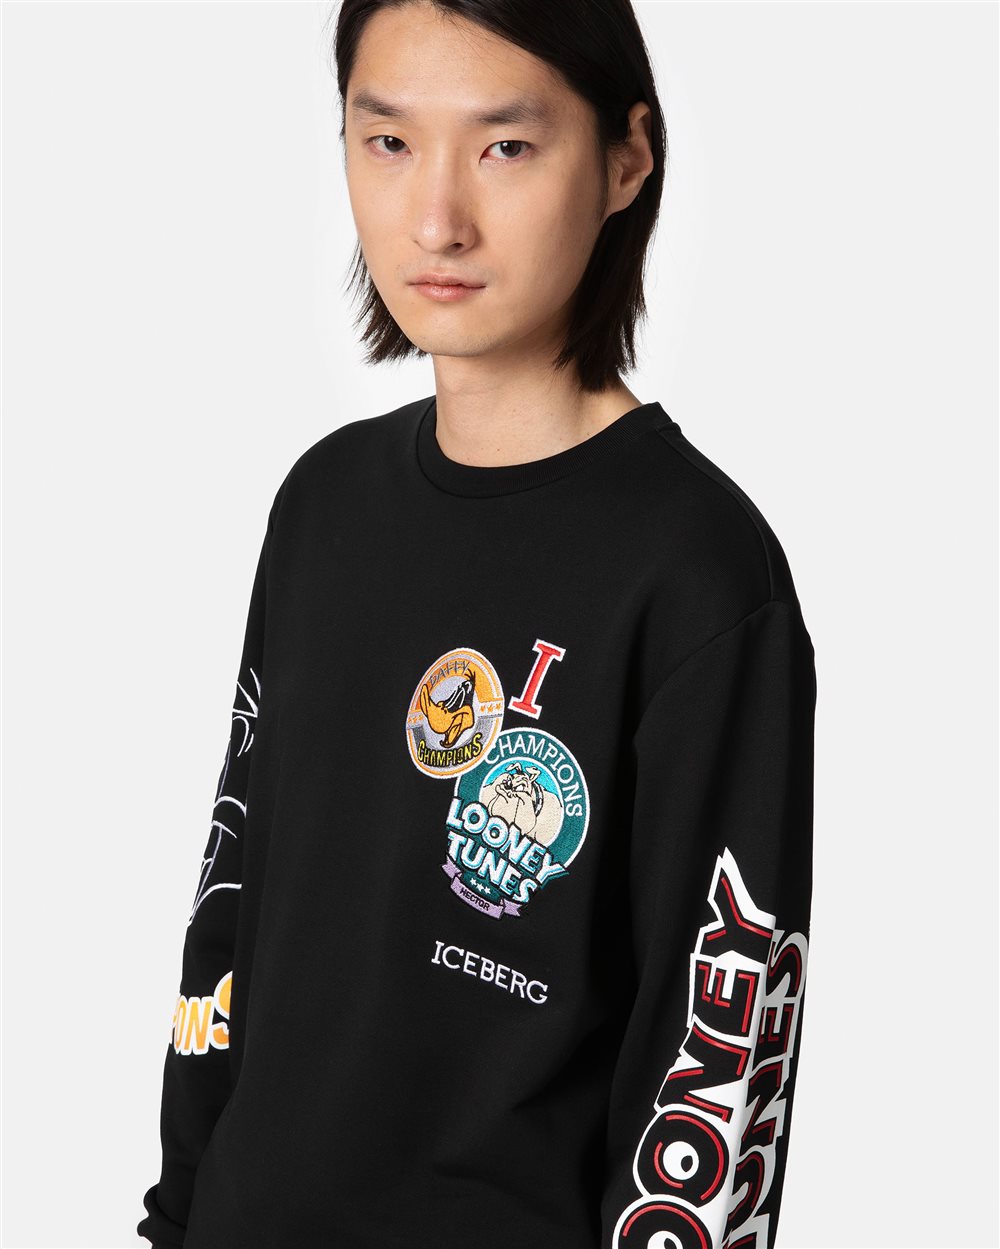 Sweatshirt with cartoon details - Iceberg - Official Website